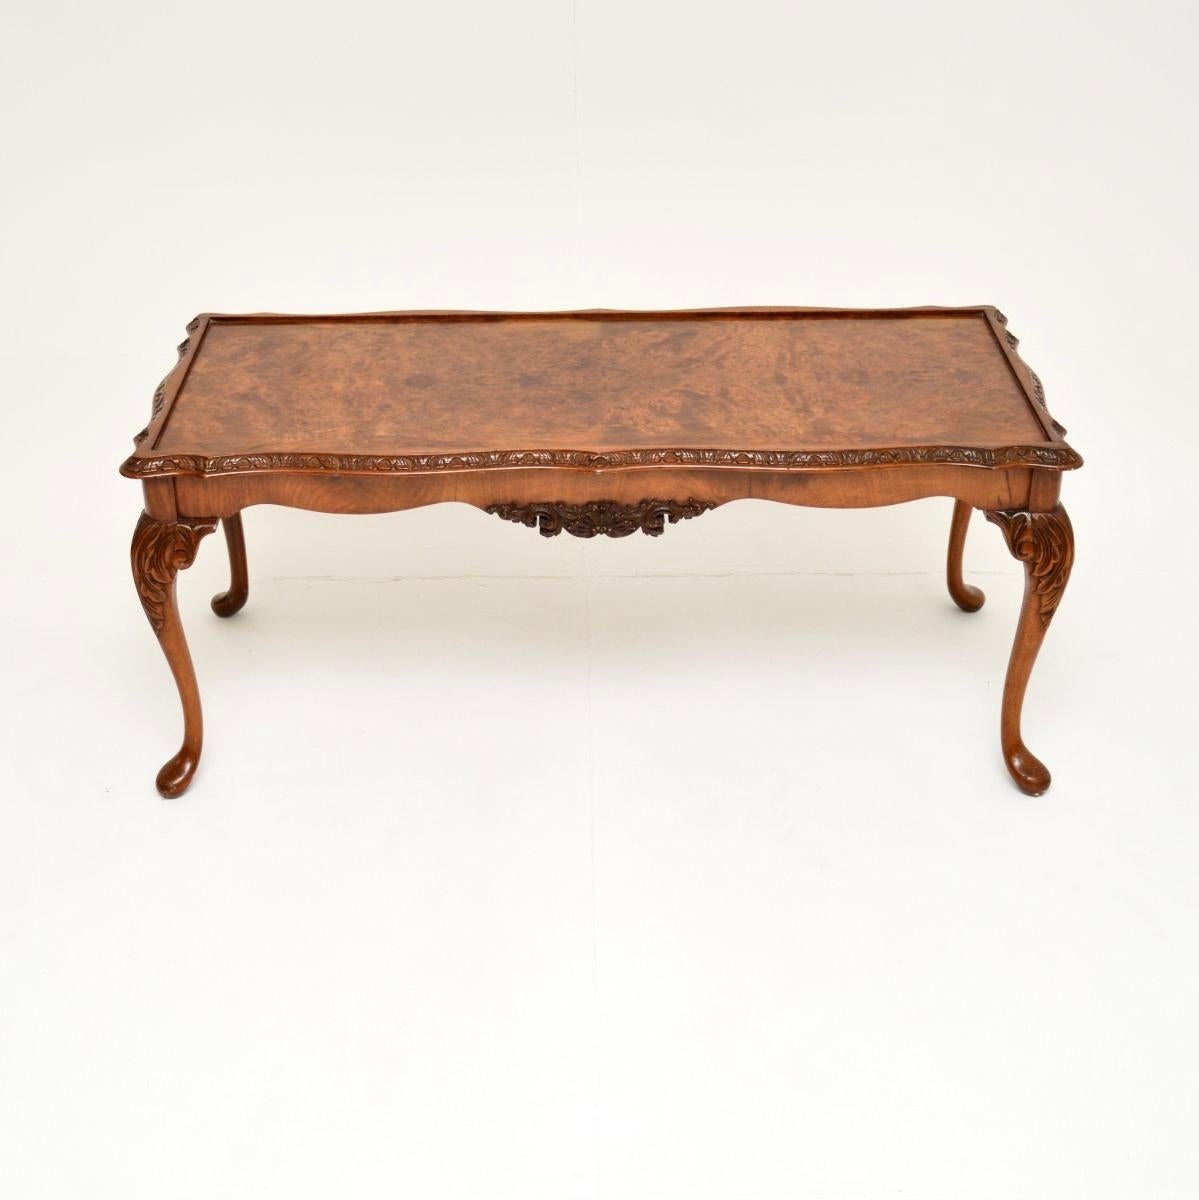 Magnifique table basse ancienne en ronce de noyer de style Queen Anne, fabriquée en Angleterre et datant des années 1950.

Ce meuble est d'une qualité remarquable. Il repose sur des pieds cabriole avec des coquilles sculptées aux genoux, ainsi que